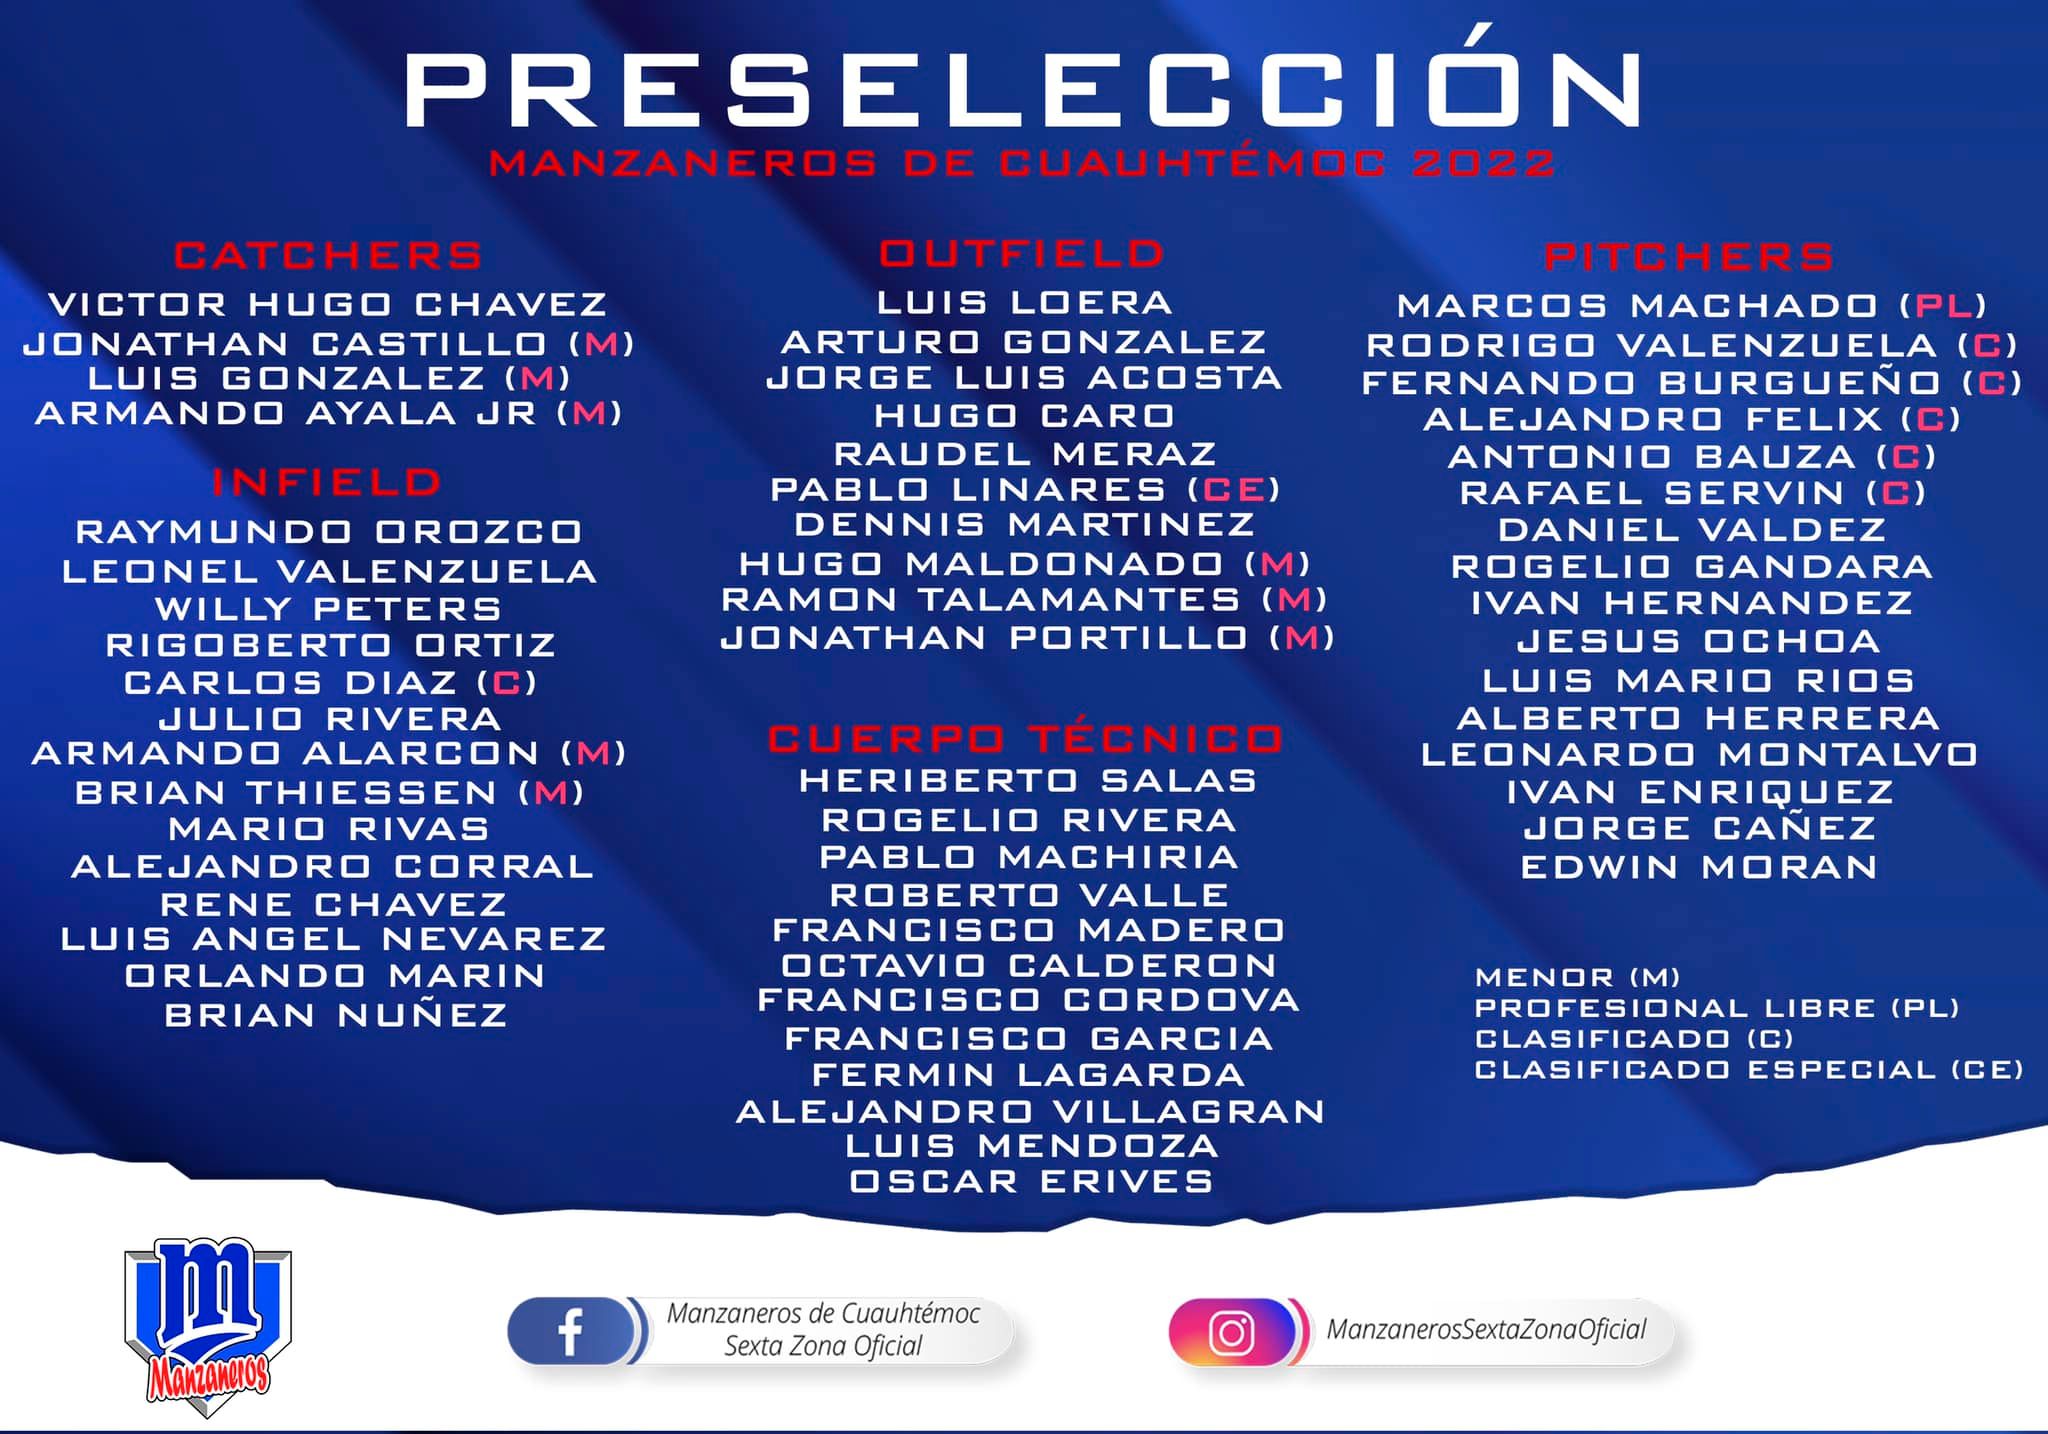 manzaneros-cuauhtemoc-preseleccion-beisbol-chihuahua-temporada-2022